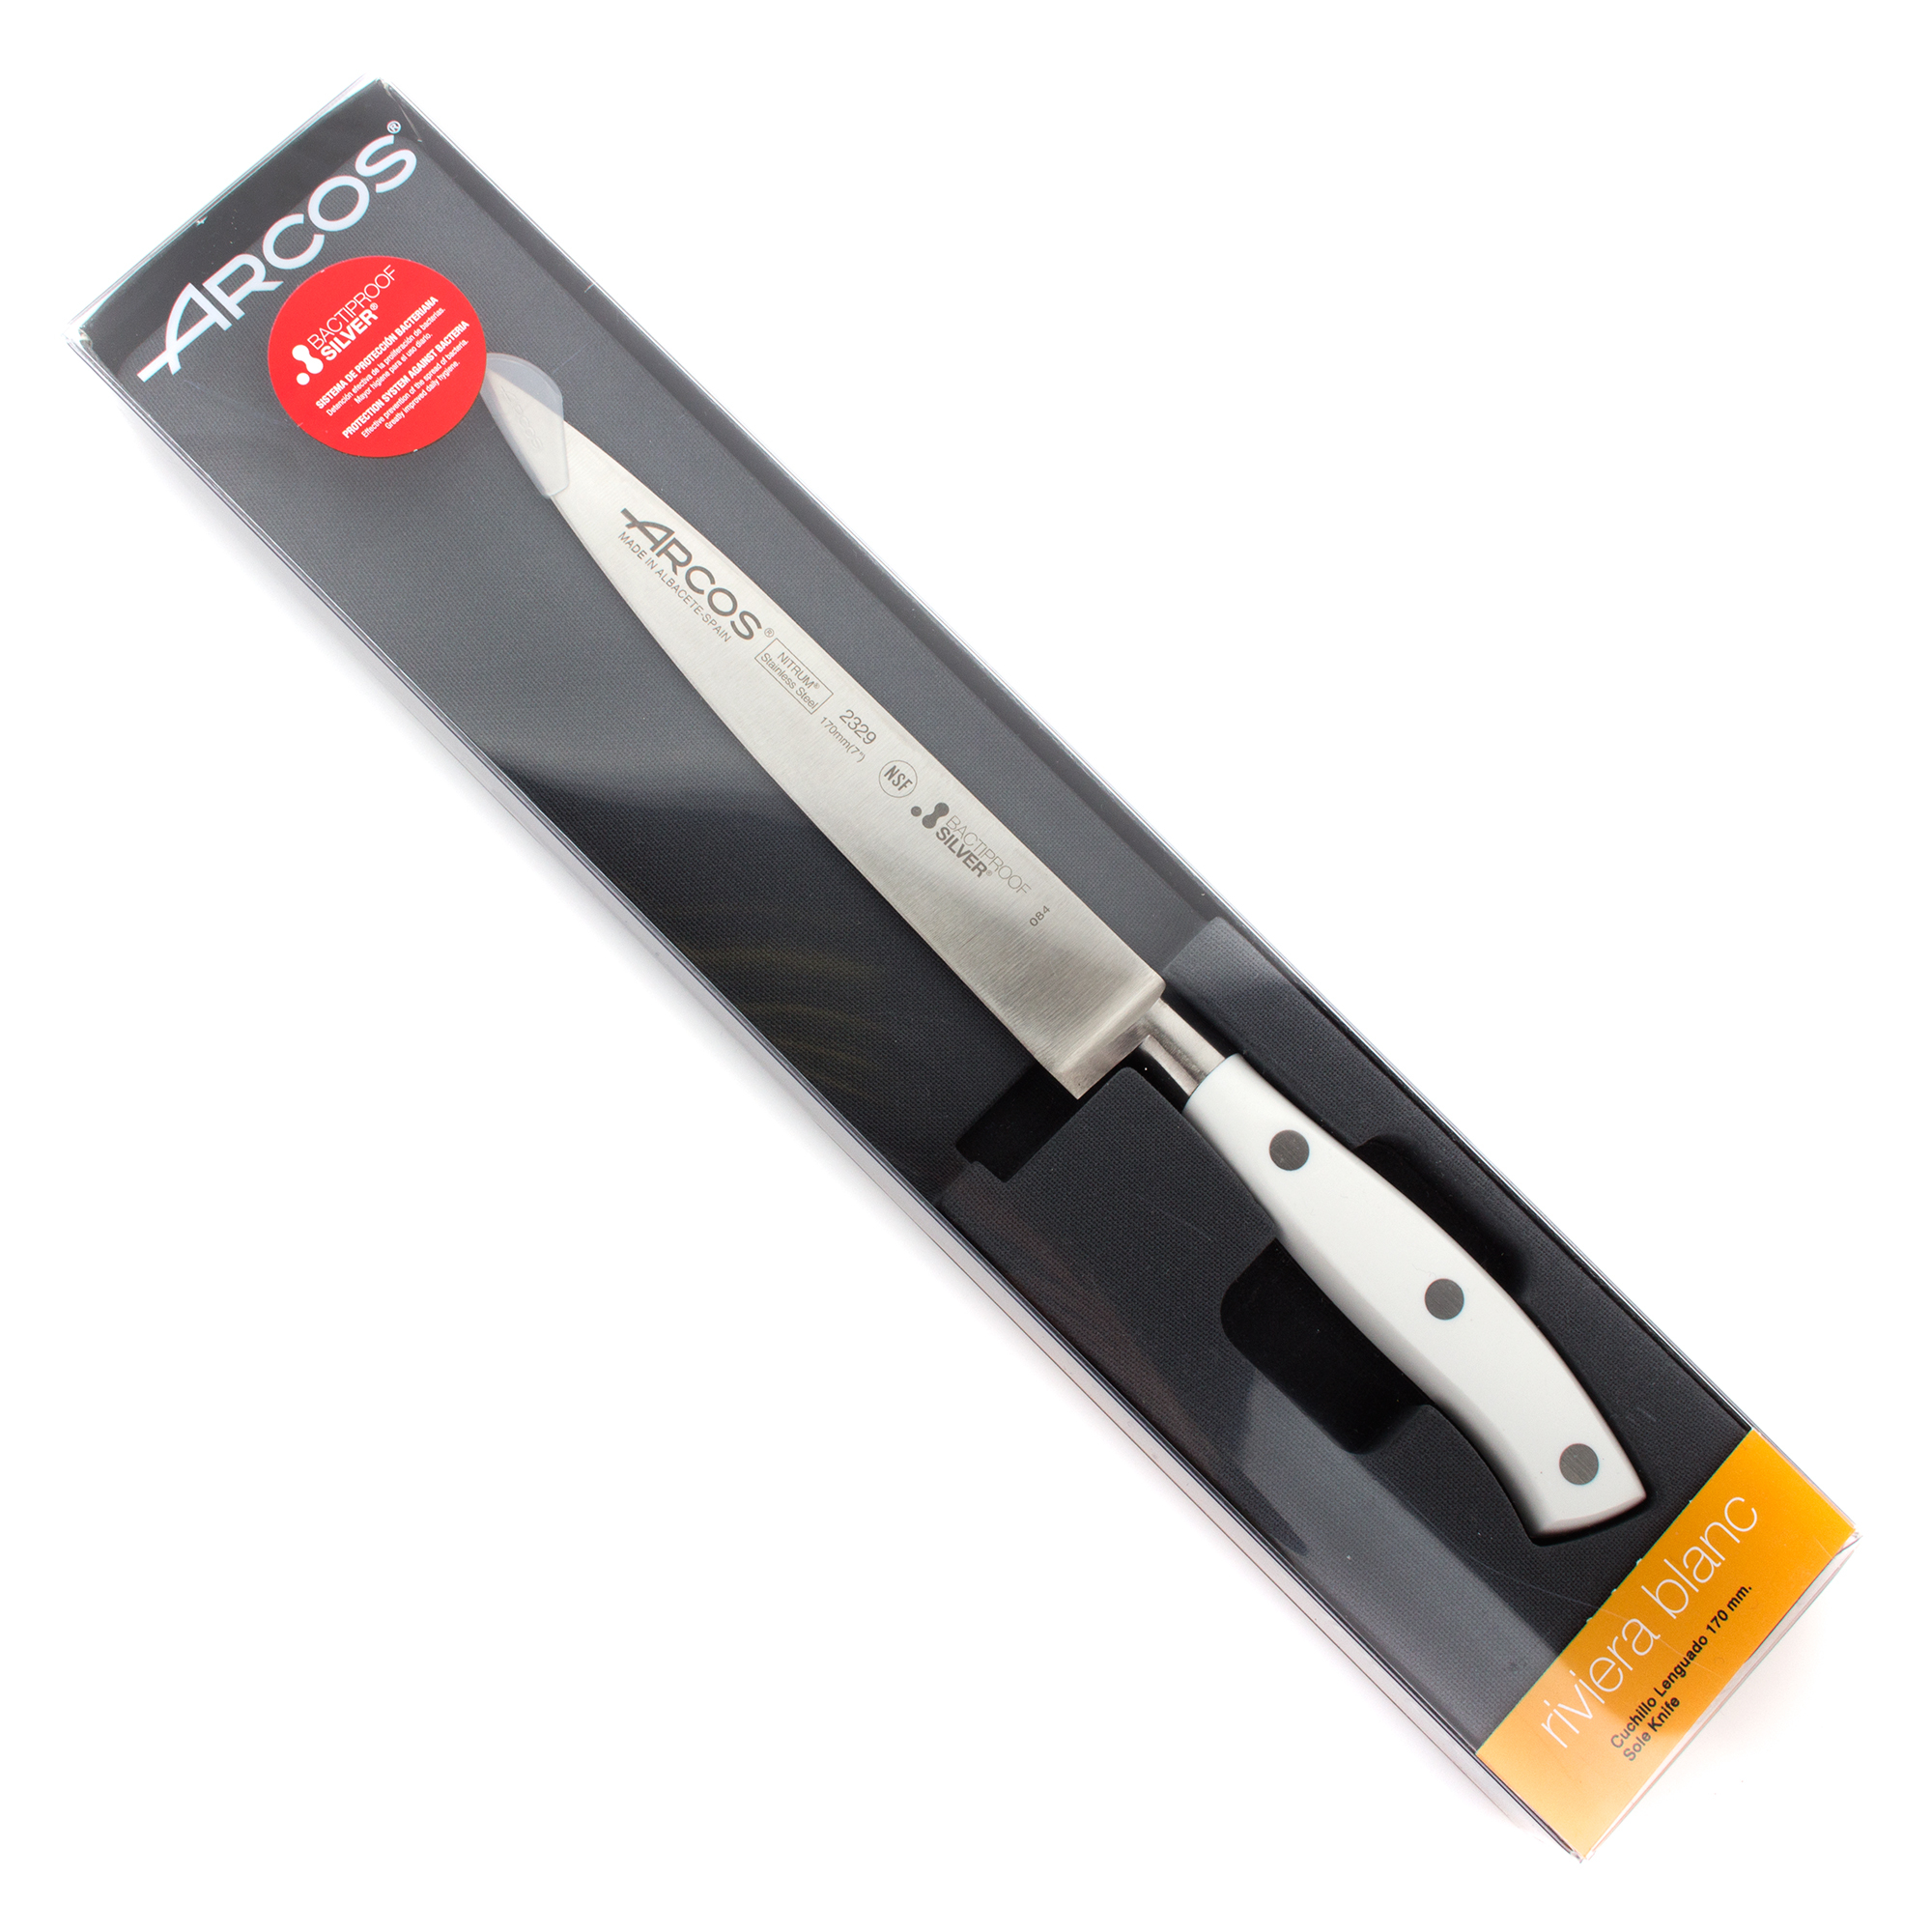 Нож кухонный стальной для нарезки филе 17 см ARCOS Riviera Blanca арт. 232924W